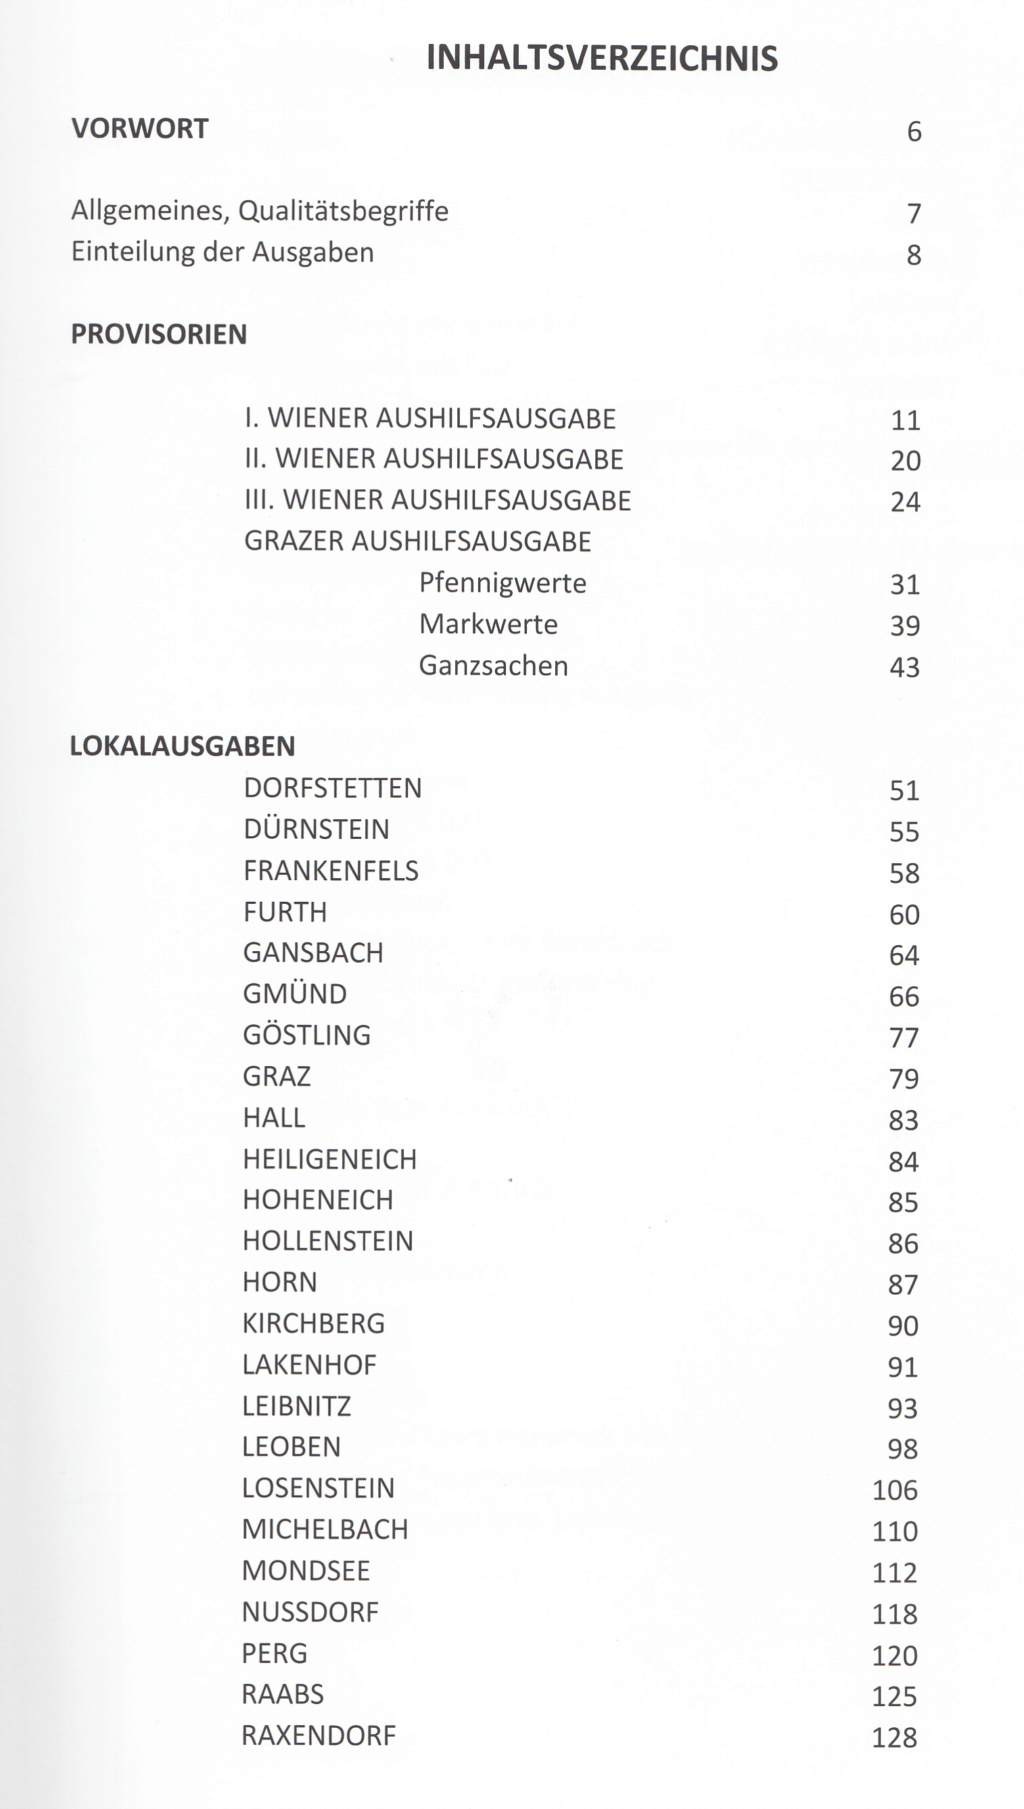 Osterreich - Die Büchersammlungen der Forumsmitglieder - Seite 10 Img_0124